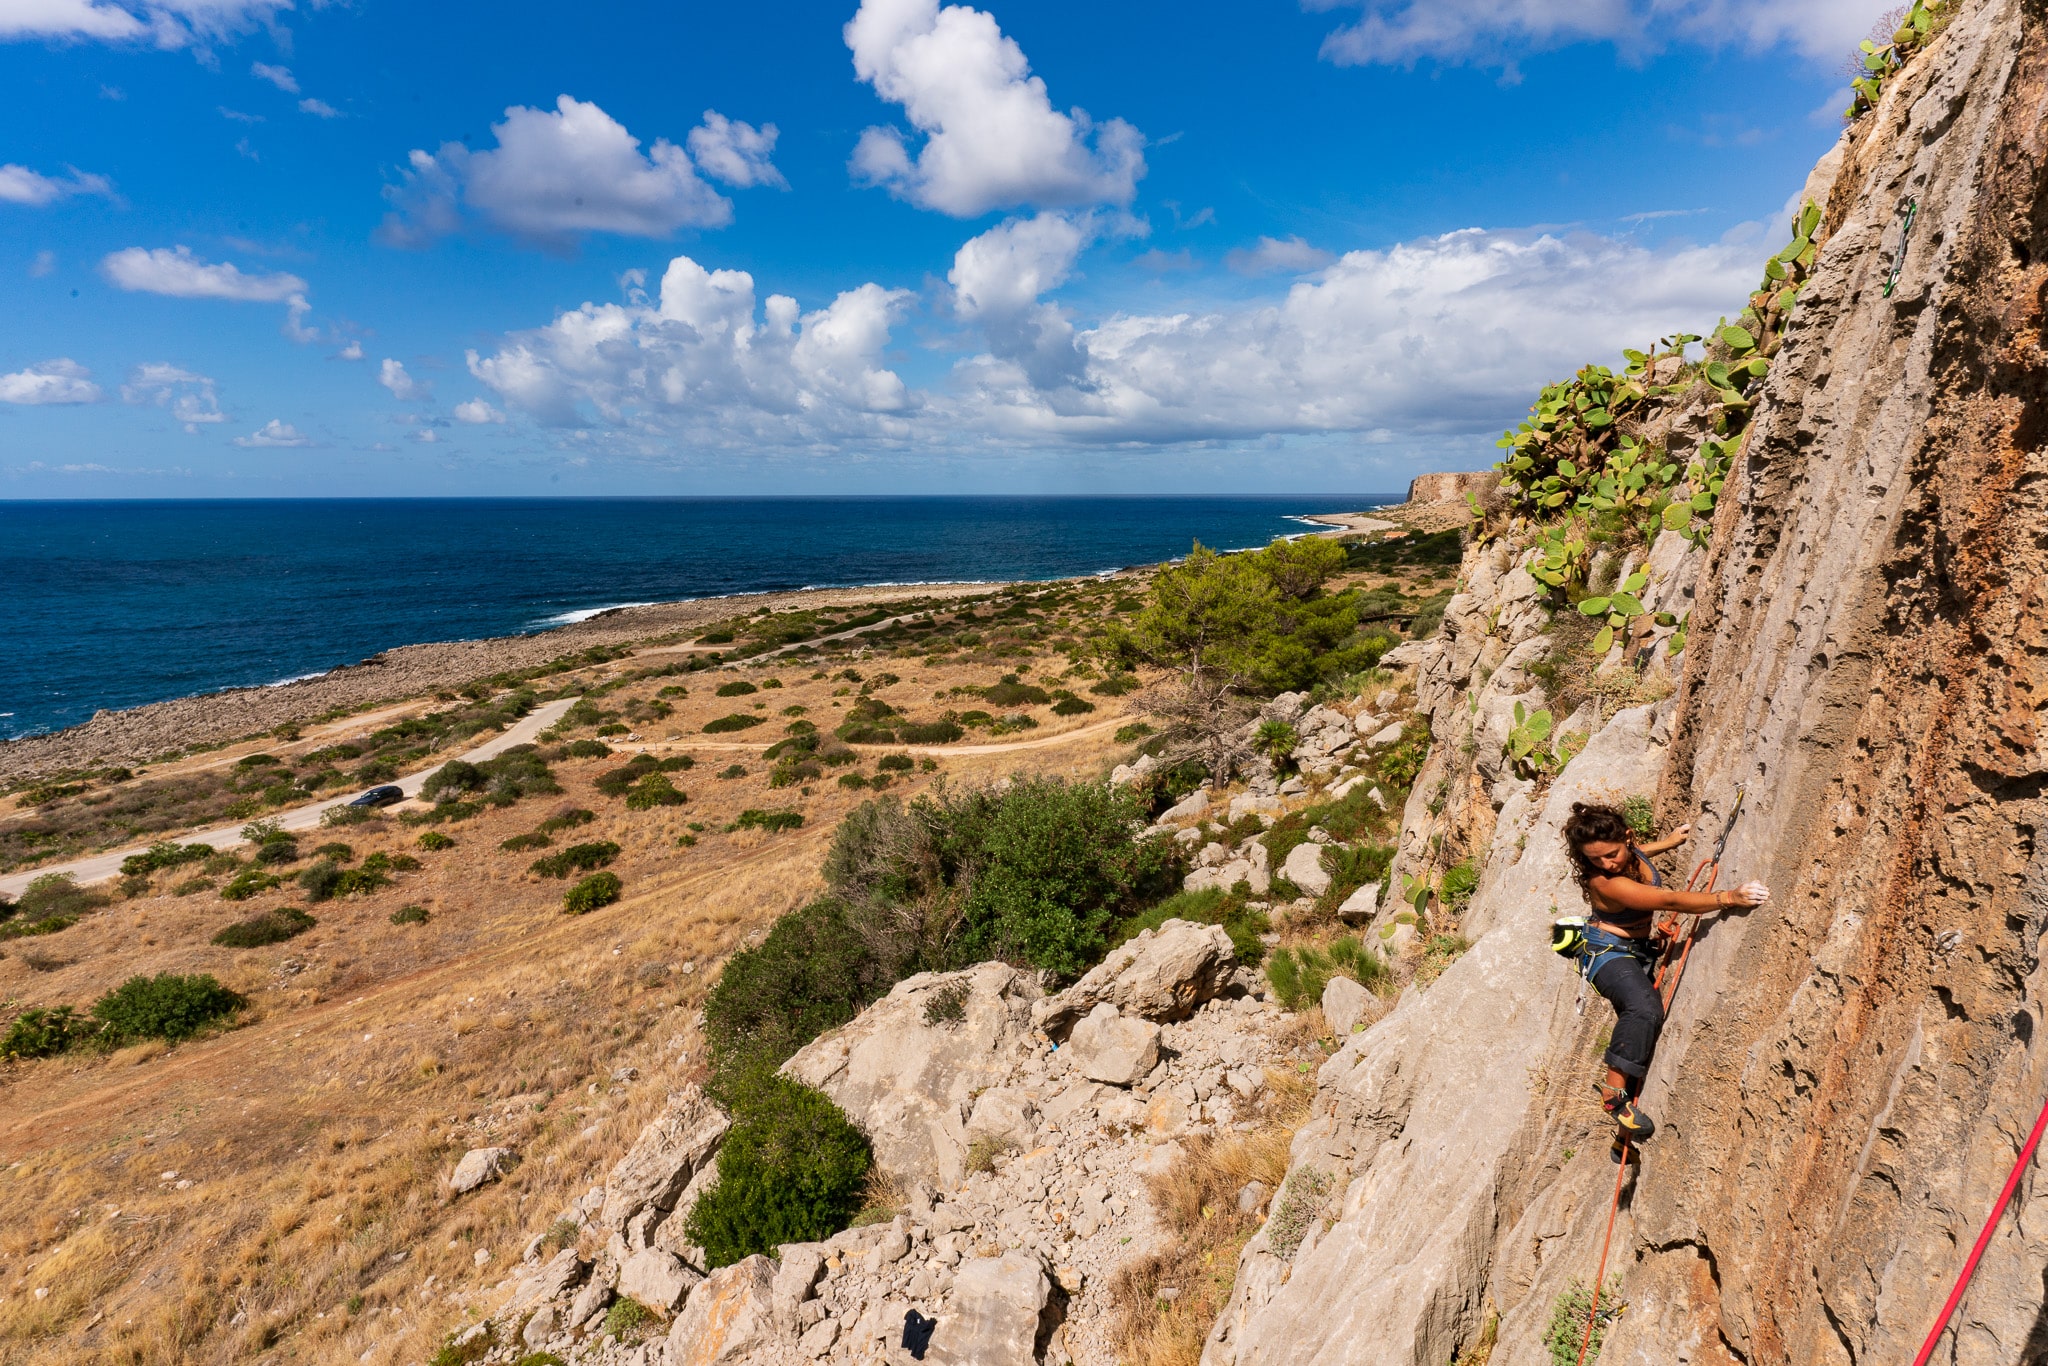 A person sport climbing on the Salinella Cliff near San Vito Lo Capo